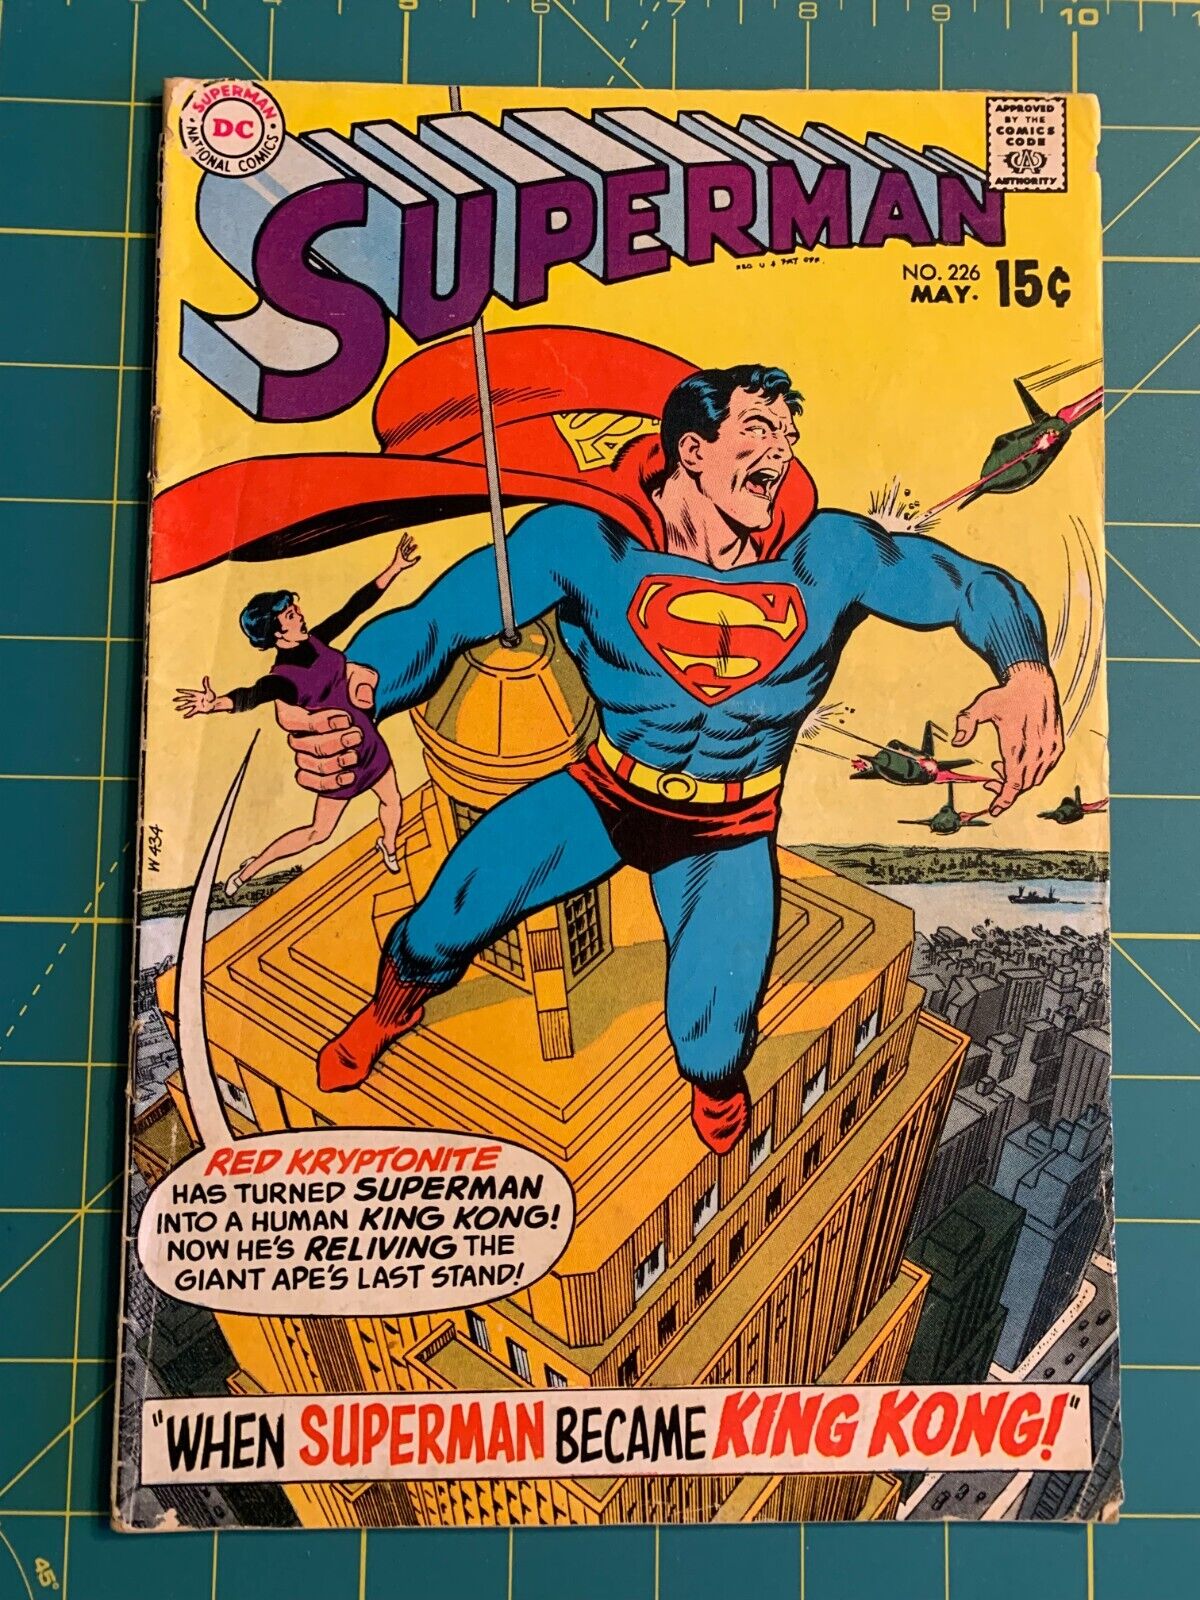 Superman #226 - May 1970 - Vol.1 - (7950)